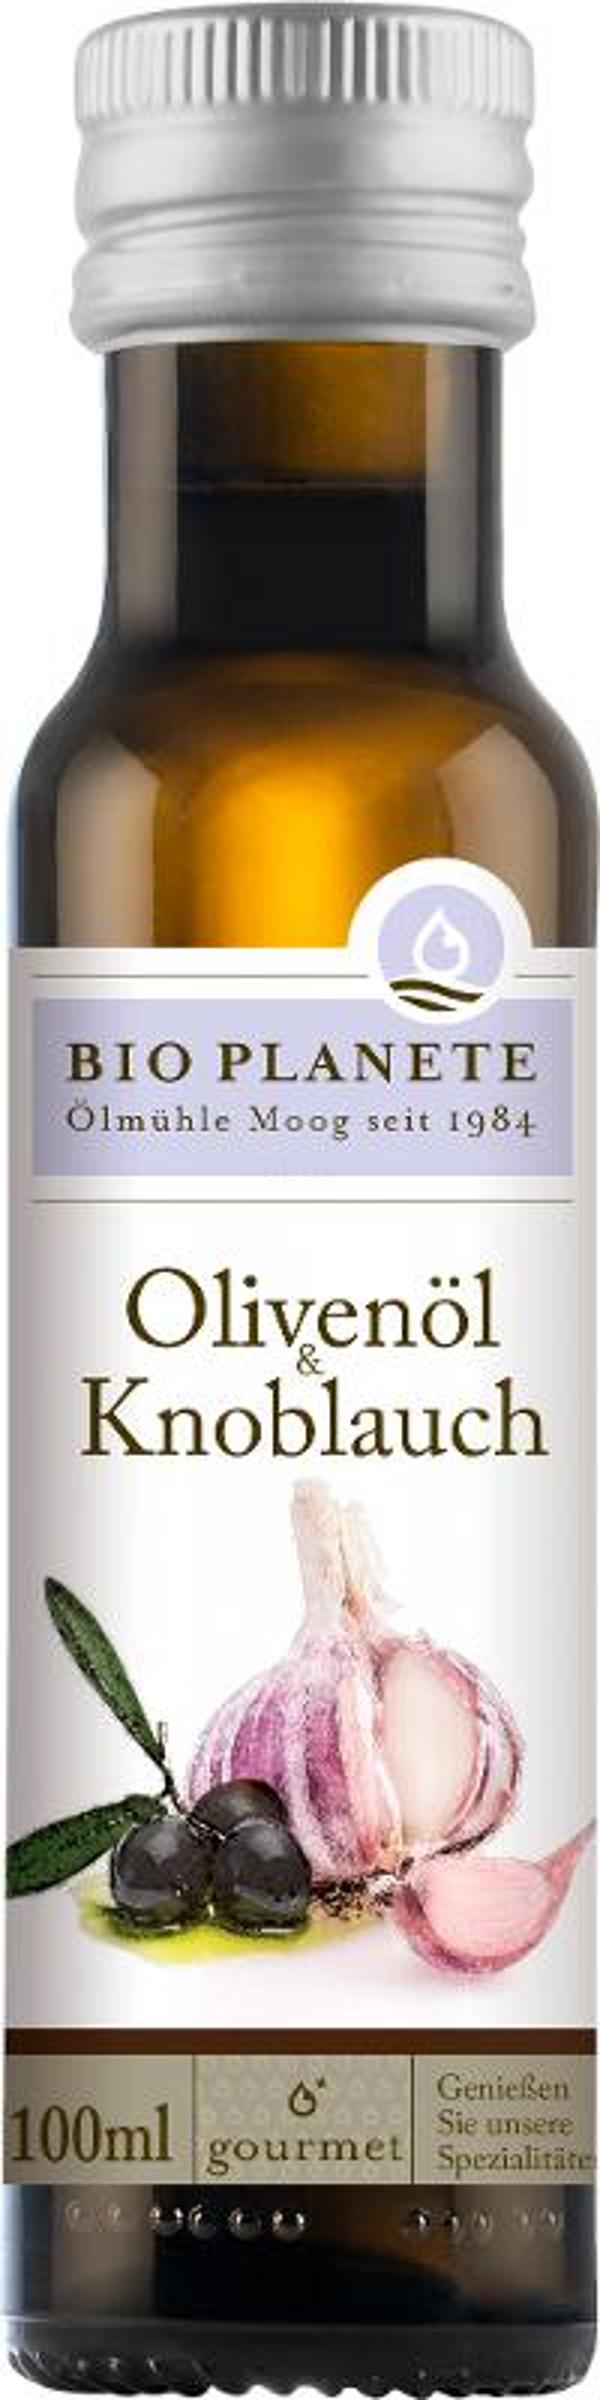 Produktfoto zu Olivenöl Knoblauch 100ml